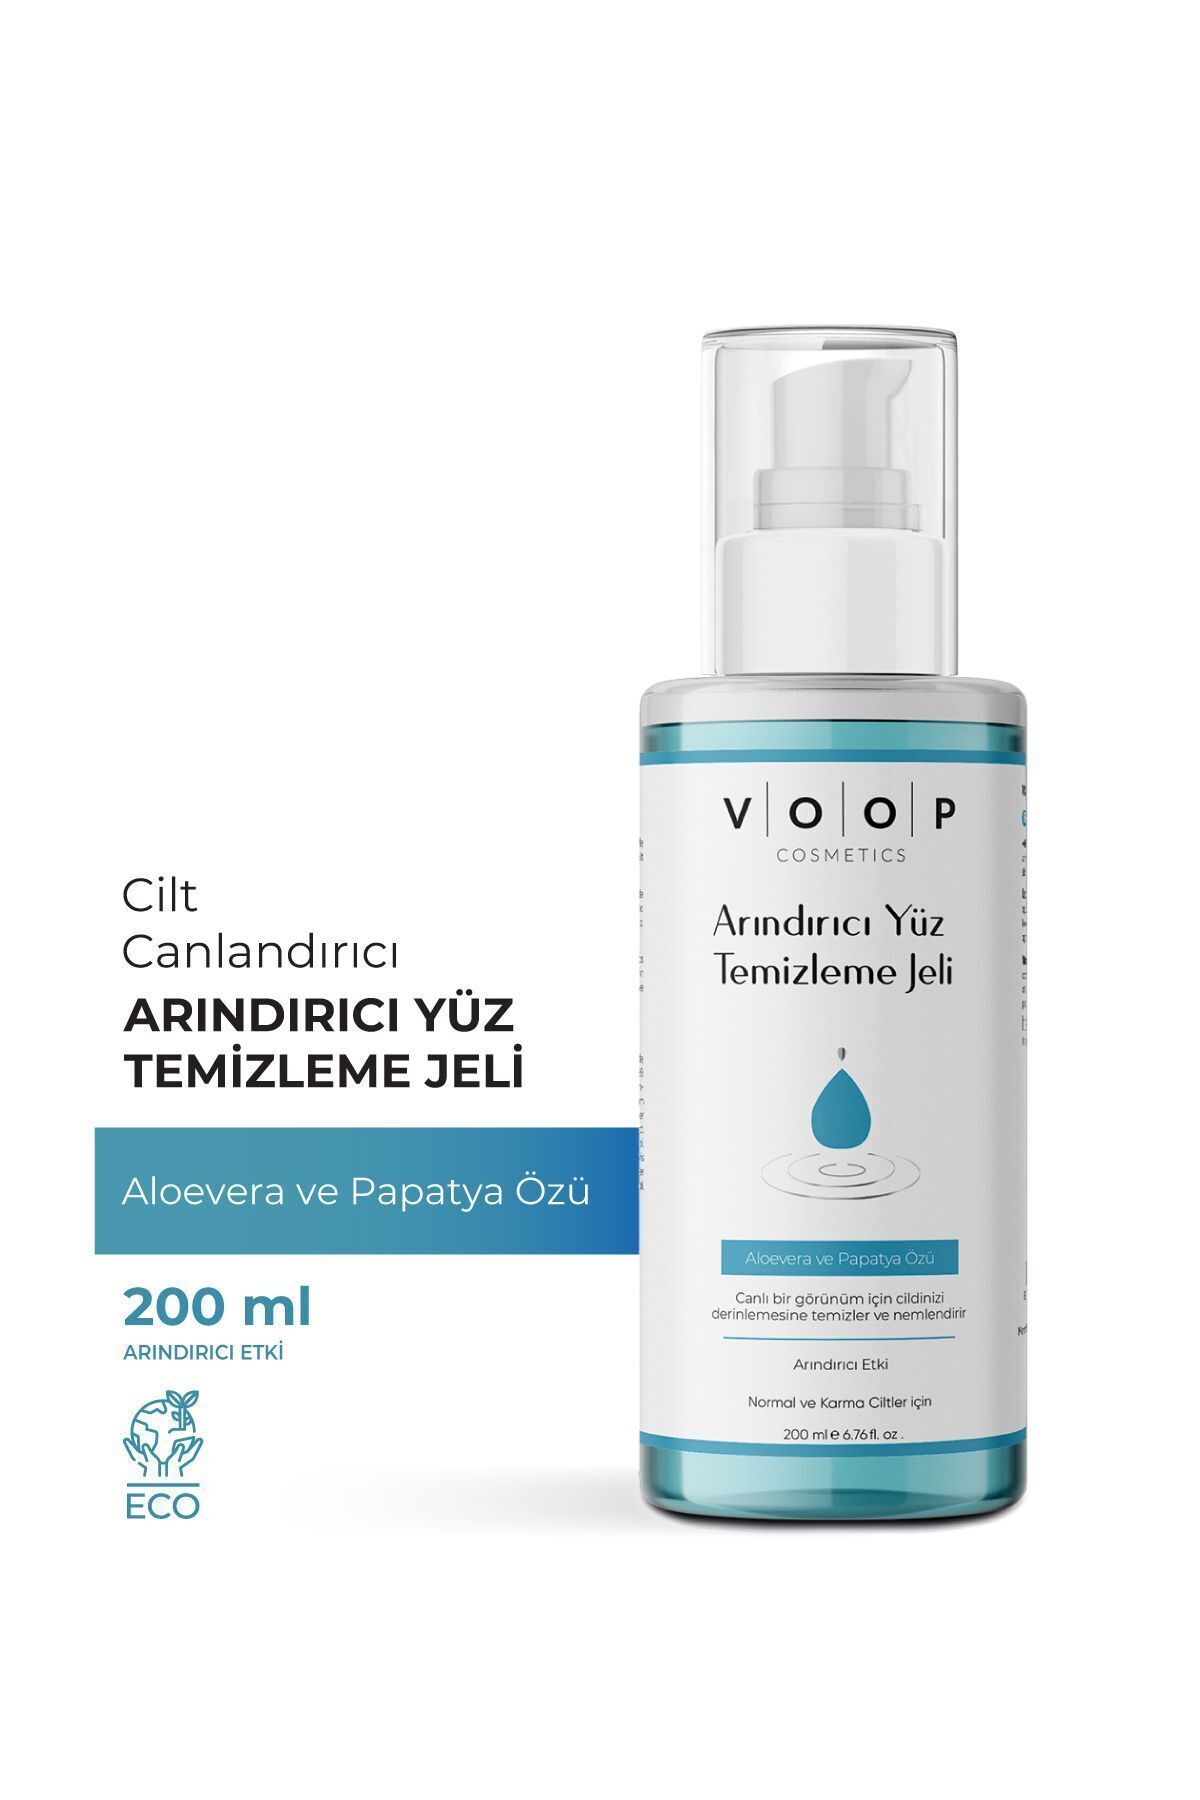 VOOP Arındırıcı Yüz Temizleme Jeli | Aloevera & Papatya Özü - 200 ml